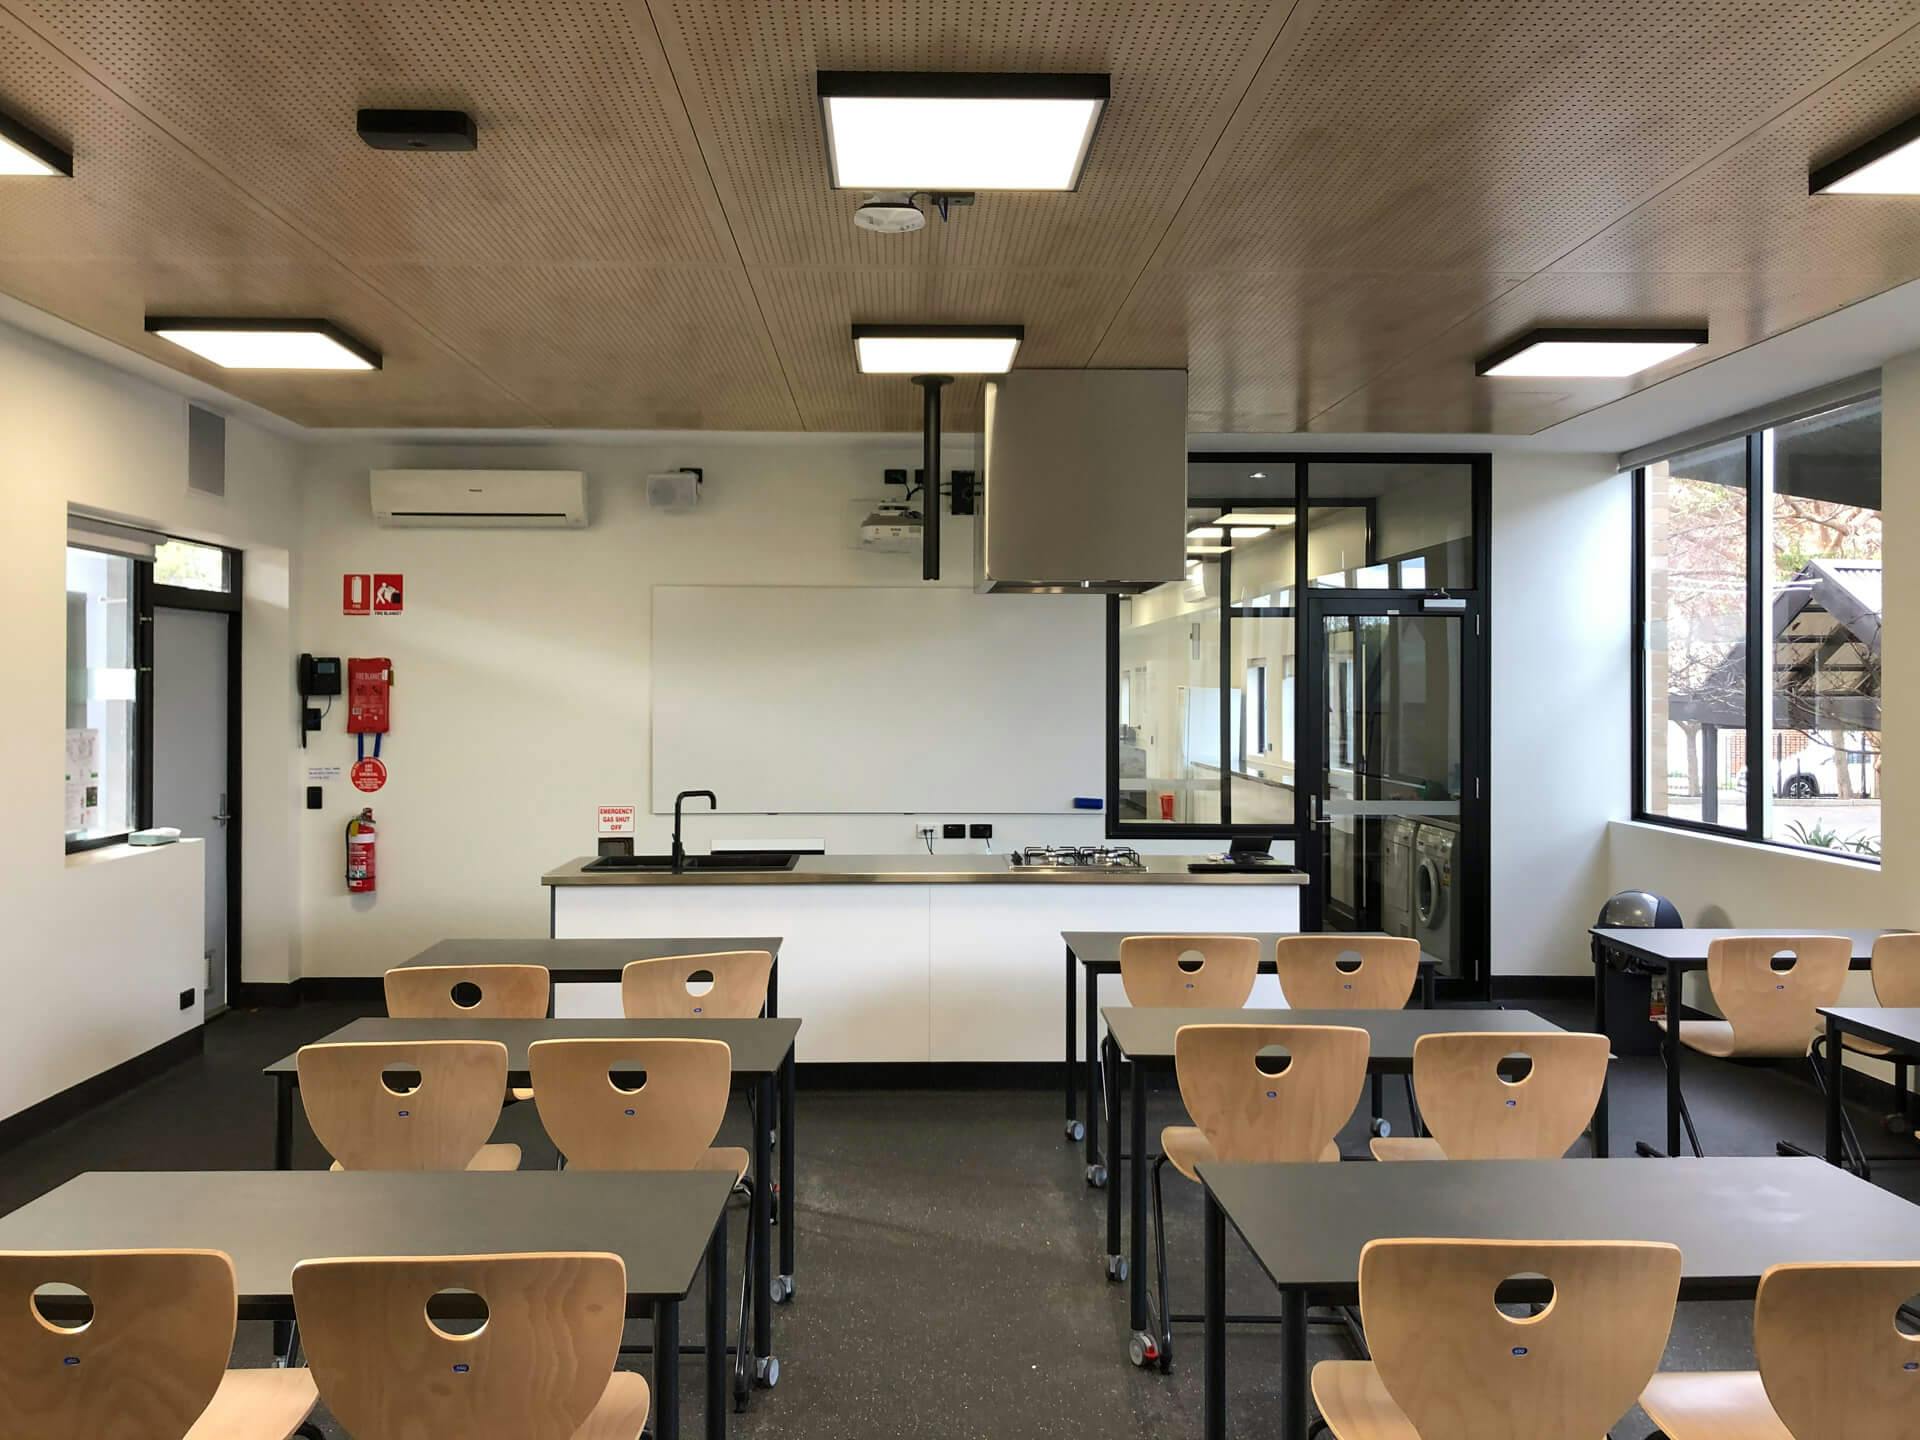 Classroom of Shelford Girls Grammar Food Technology Centre